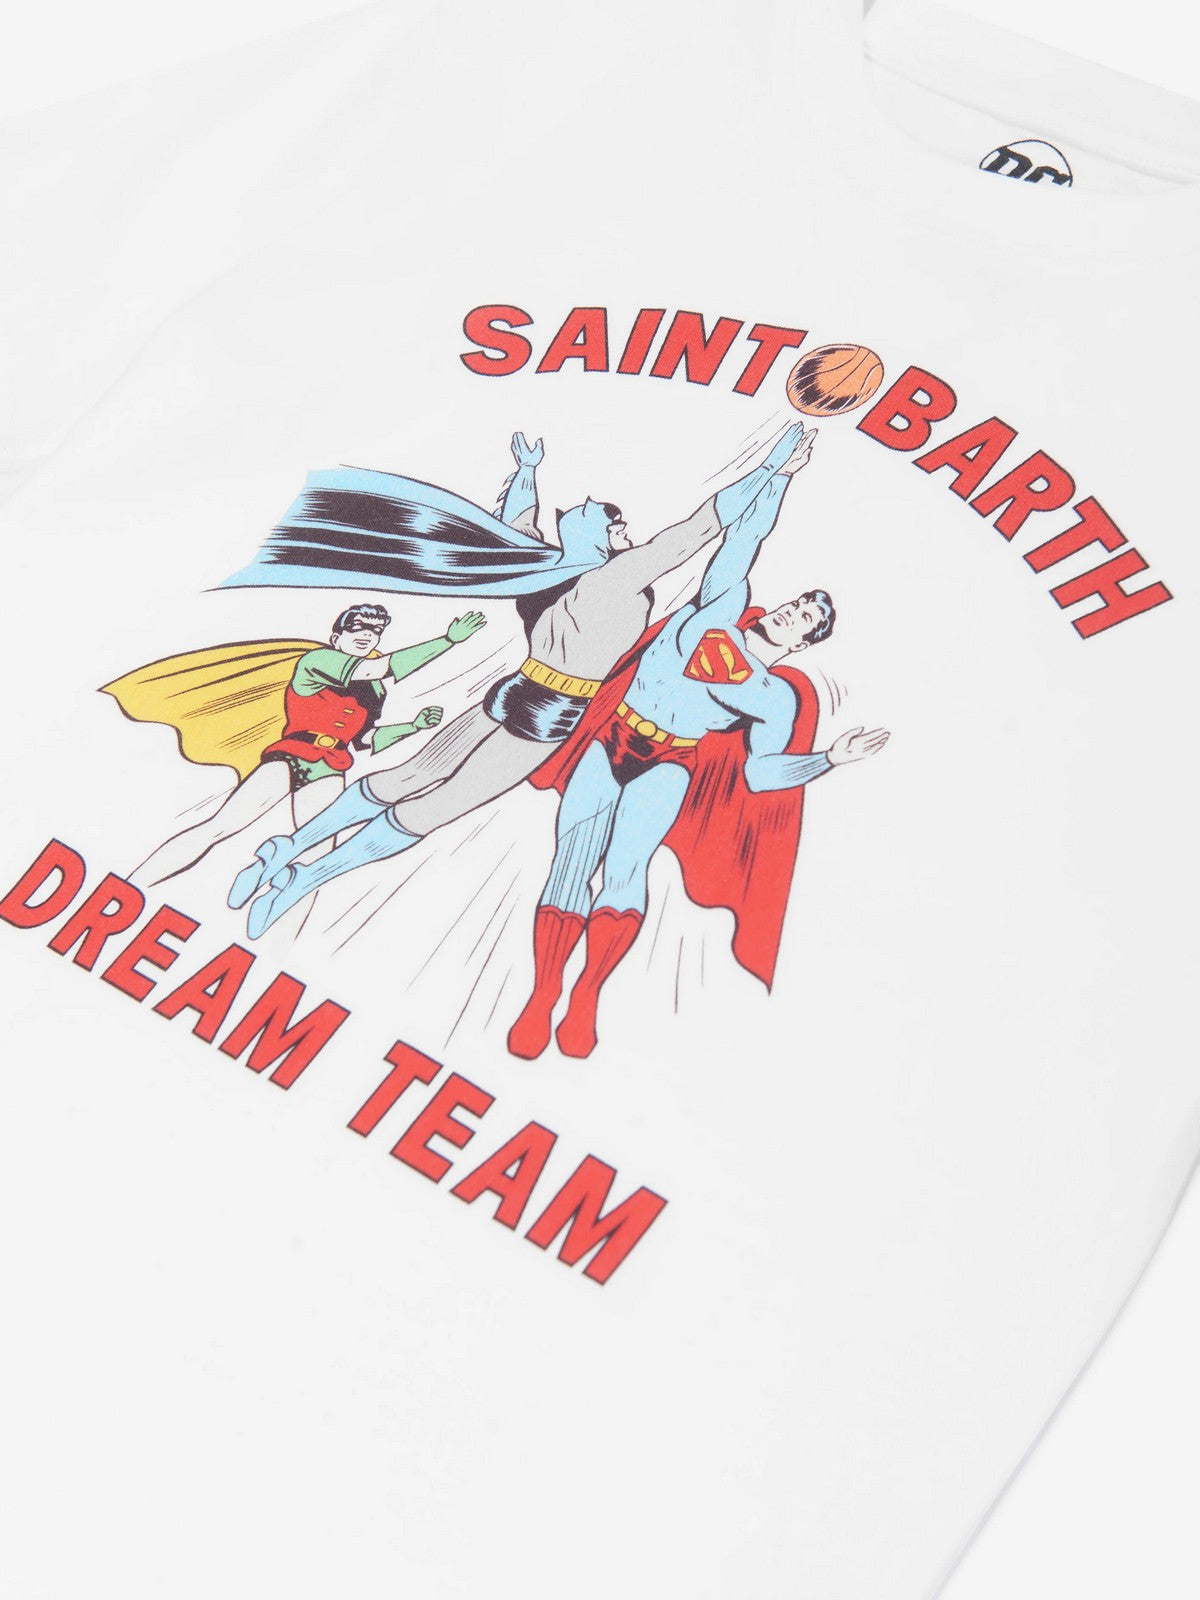 MC2 SAINT BARTH T-Shirt e Polo Uomo  TSHIRT MAN 02994F Bianco